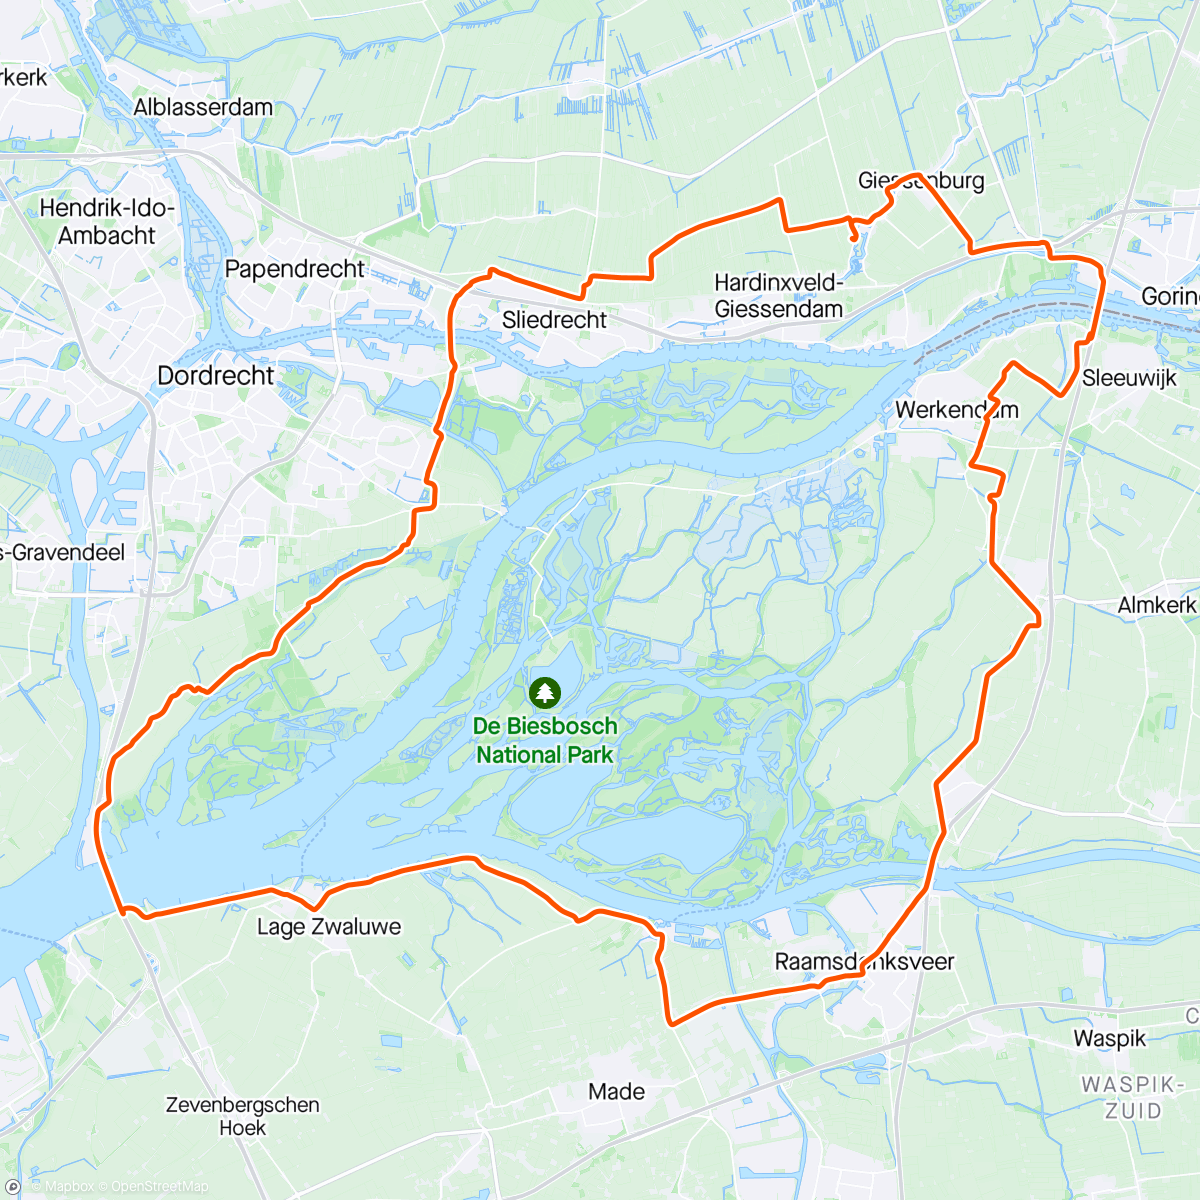 「Rondje Moerdijk」活動的地圖